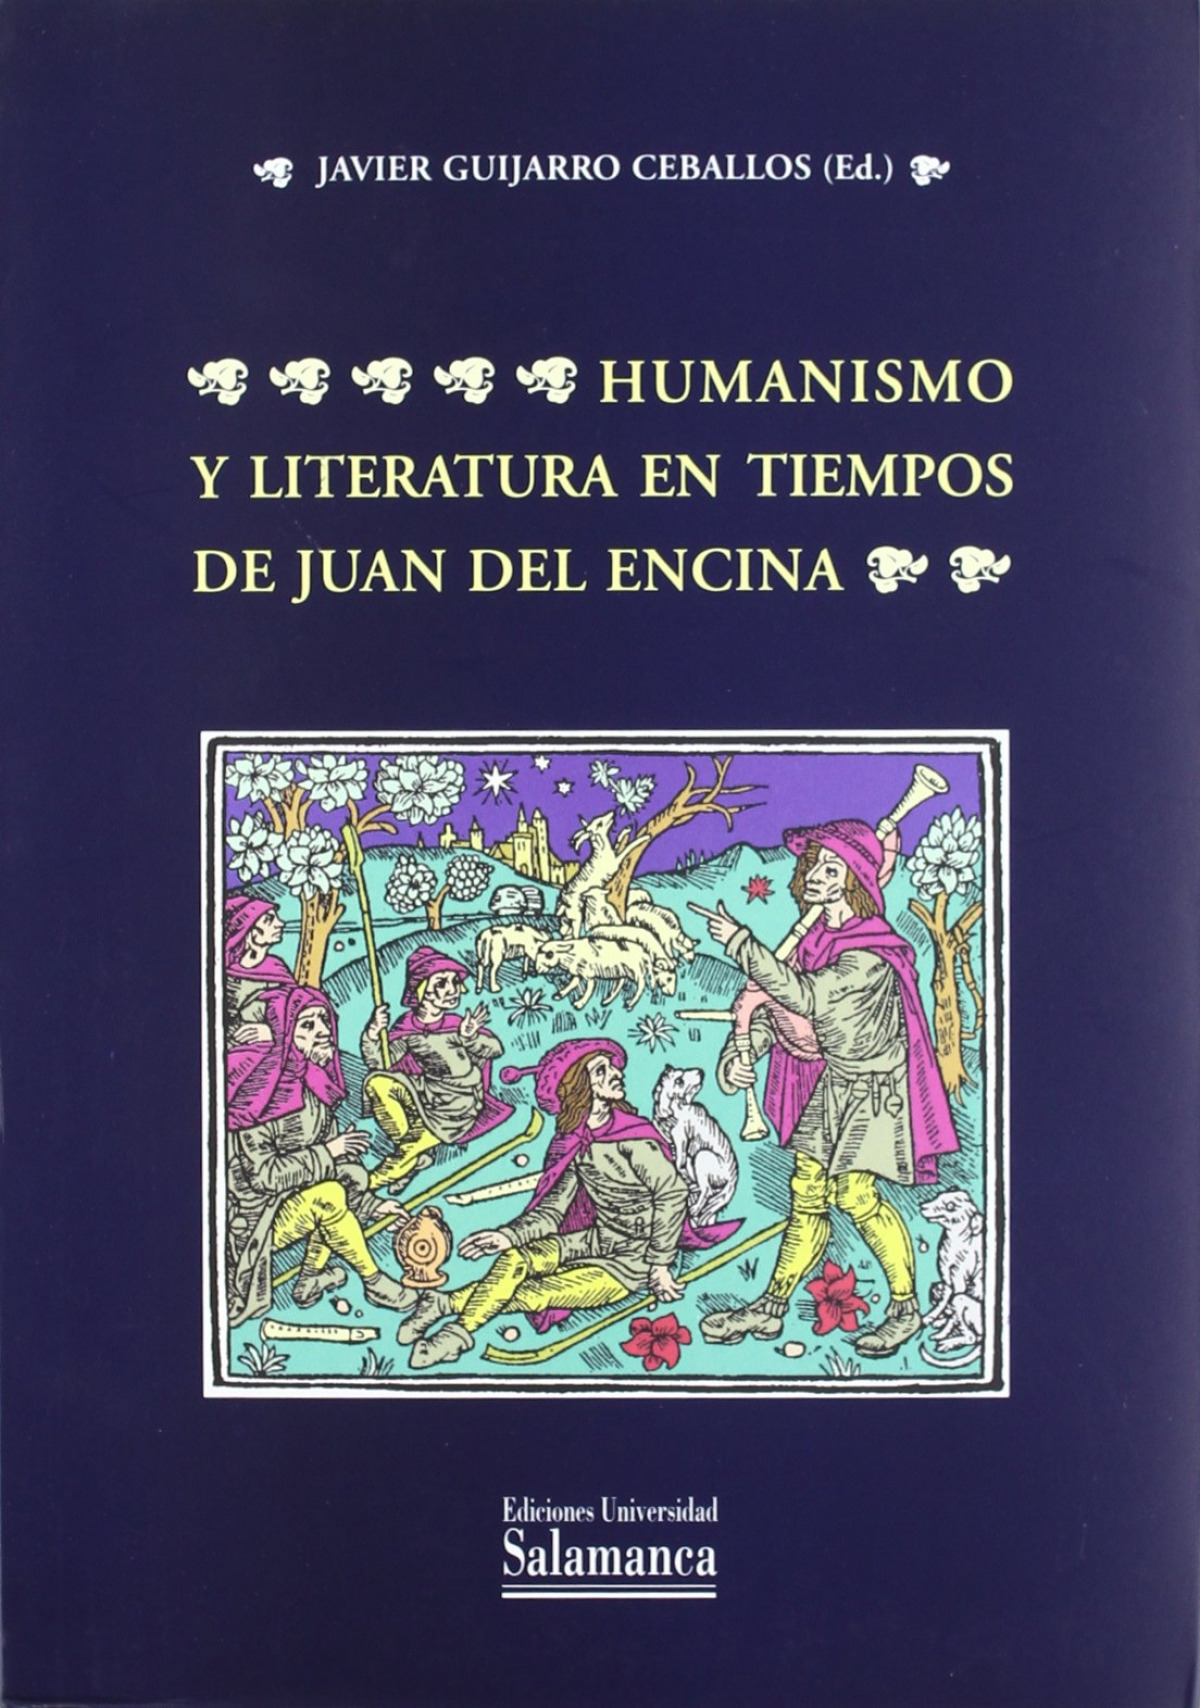 Humanismo y literatura en tiempos de Juan del Encina - Guijarro Ceballos, Javier (ed.)